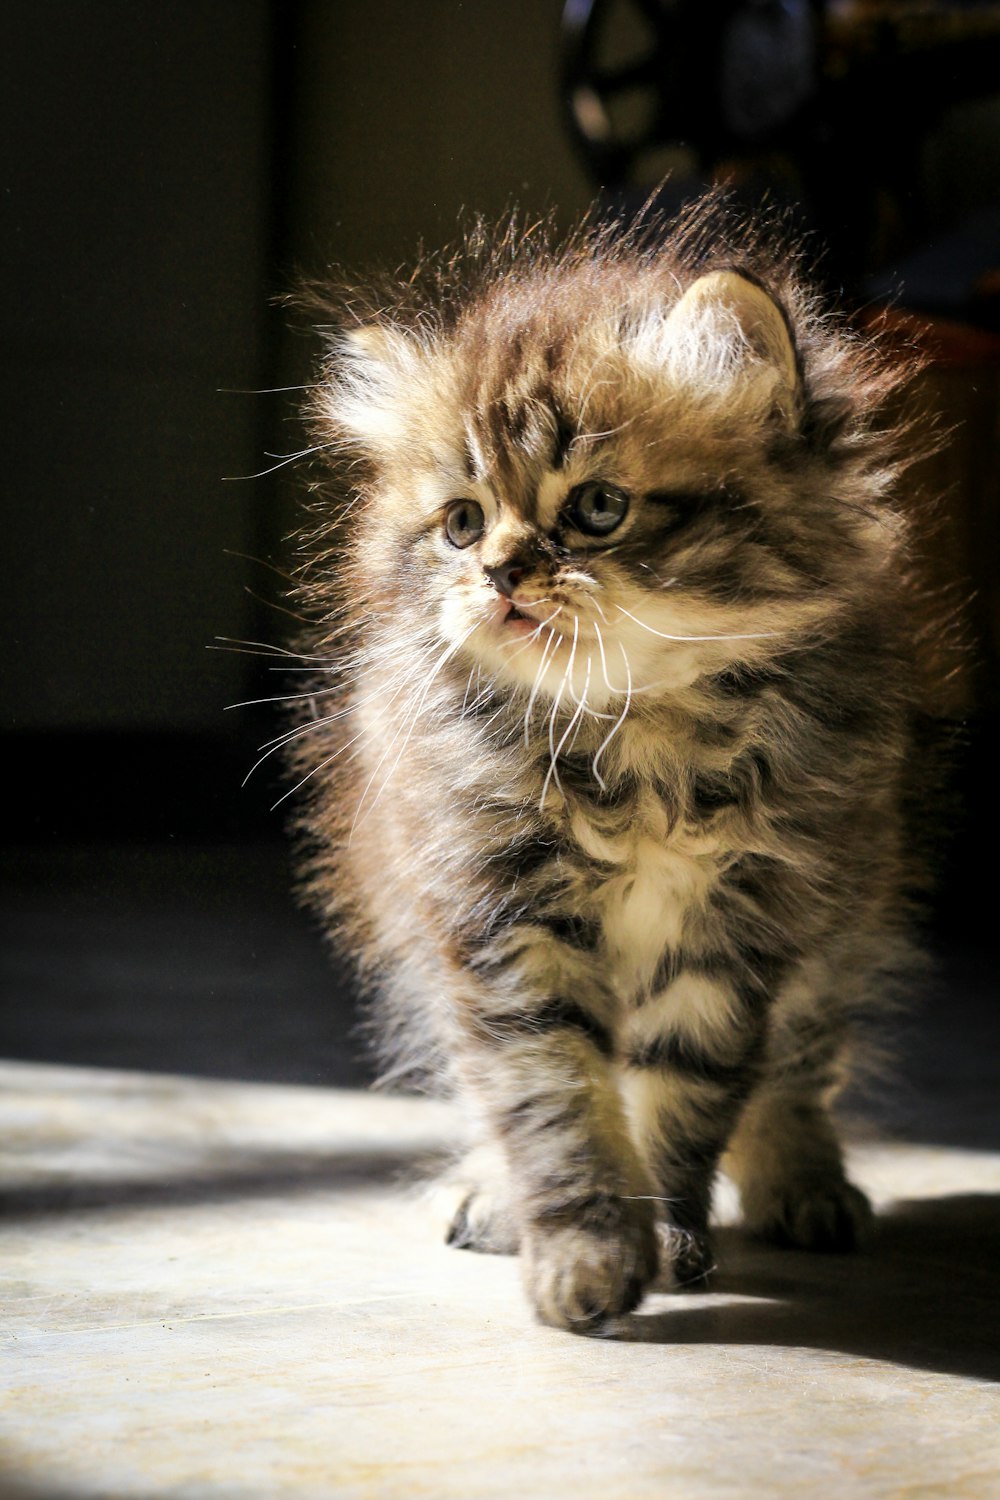 a small kitten walking across a tile floor